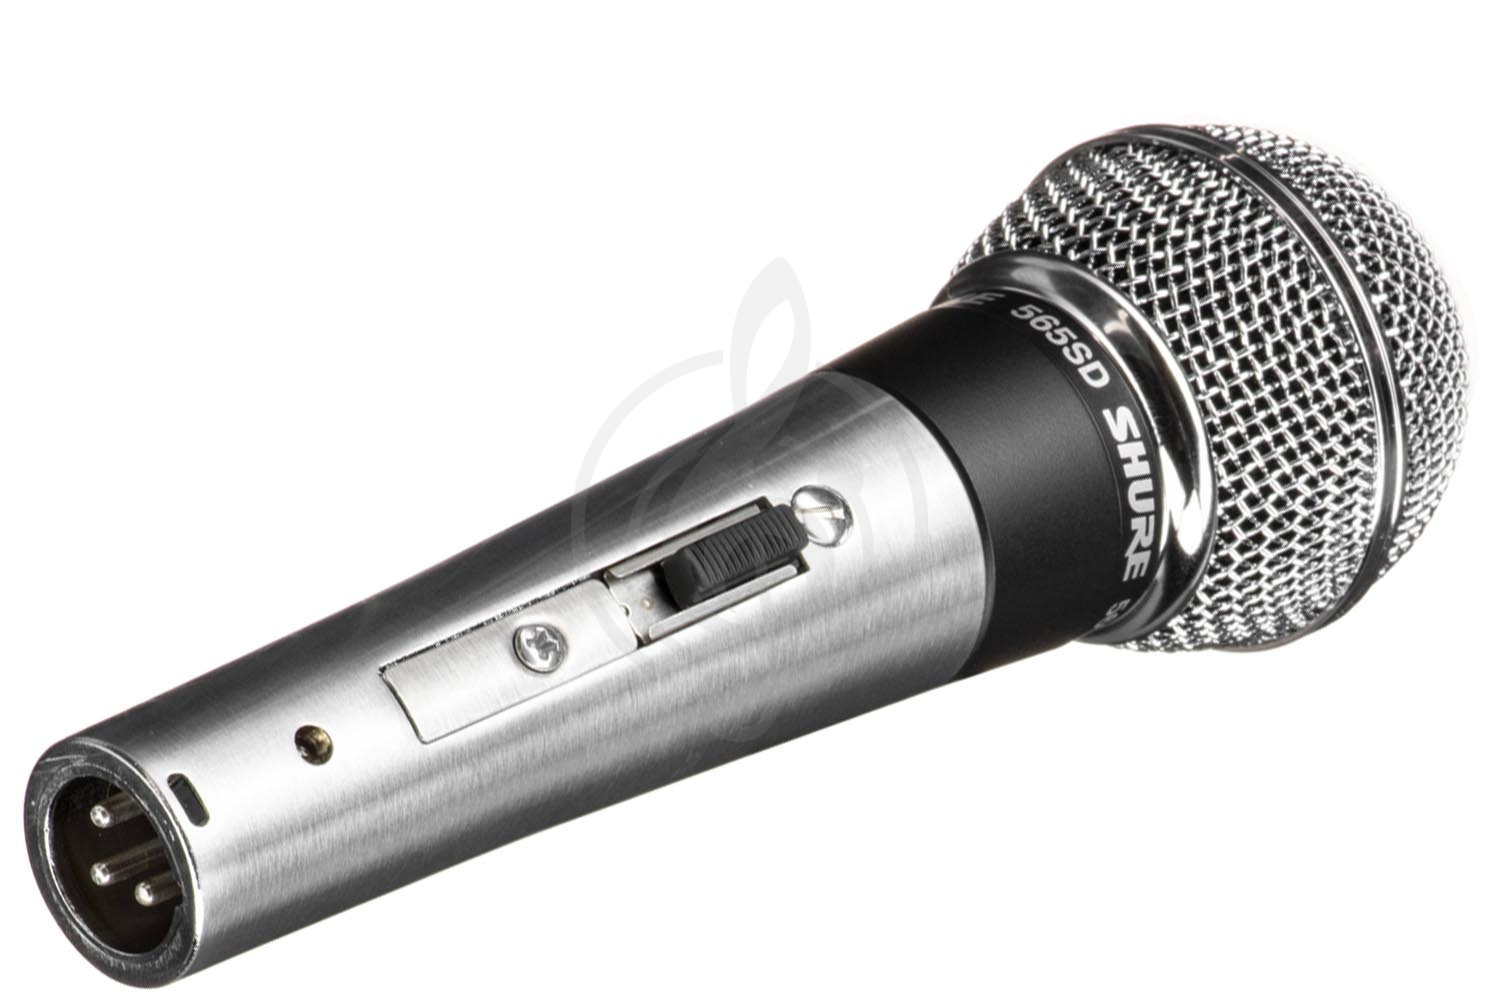 Инструментальный микрофон Инструментальные микрофоны Shure SHURE 565SD-LC- инструментальный микрофон 565SD-LC - фото 1